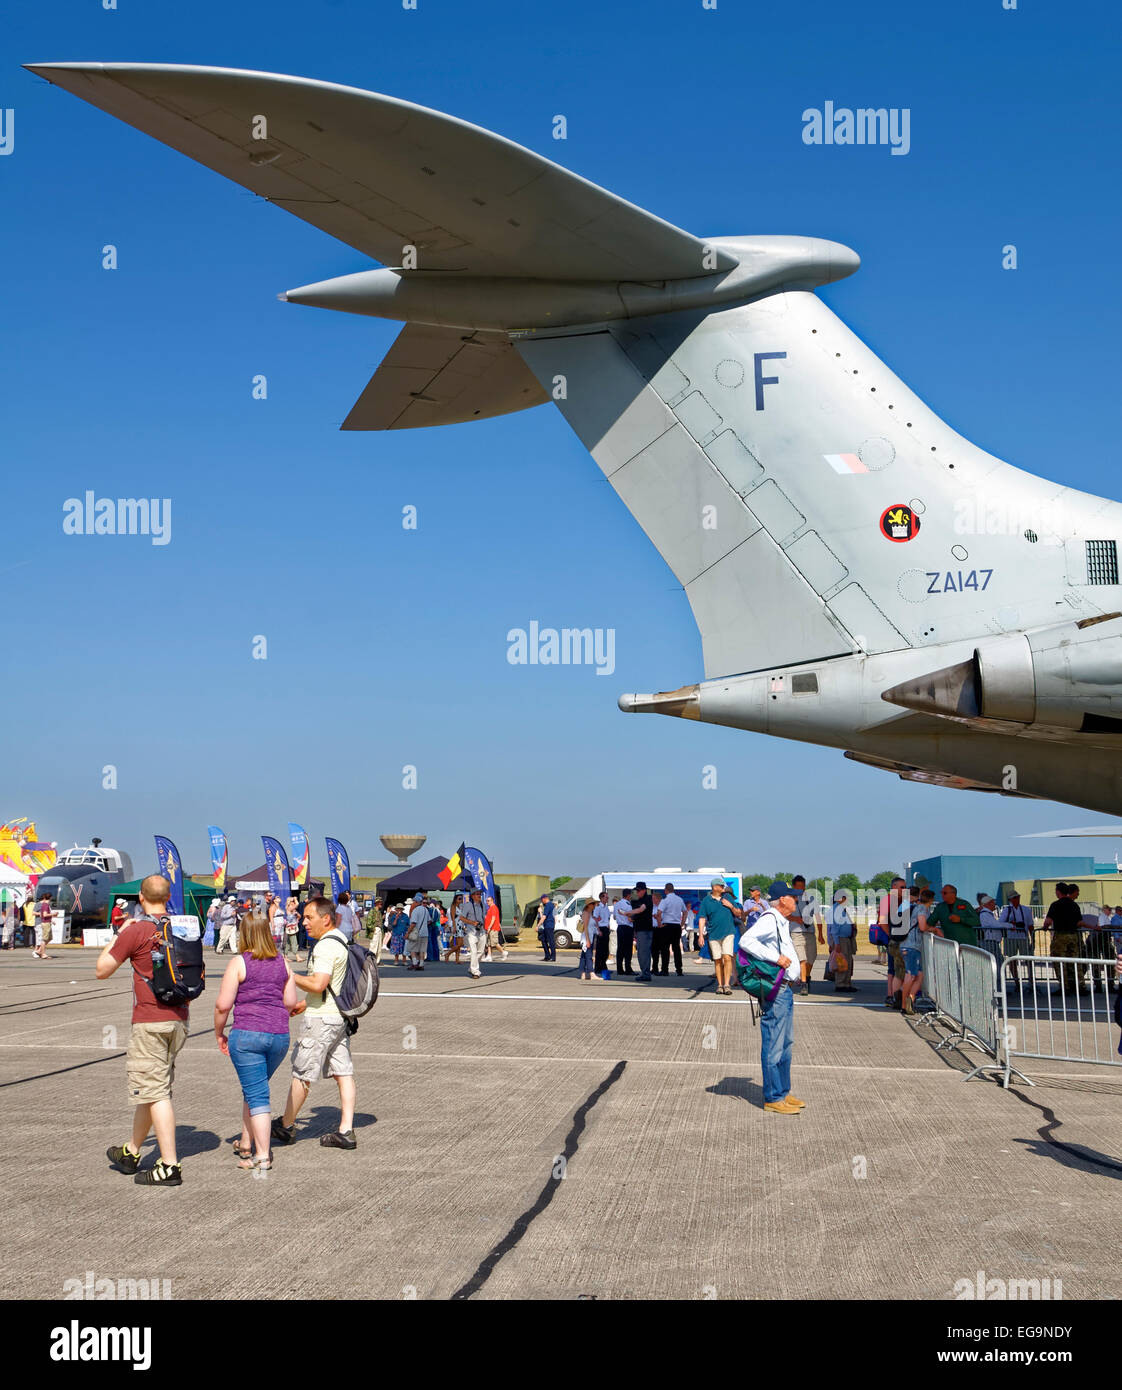 La cola de un Vickers VC10 torres sobre air show de espectadores. Foto de stock